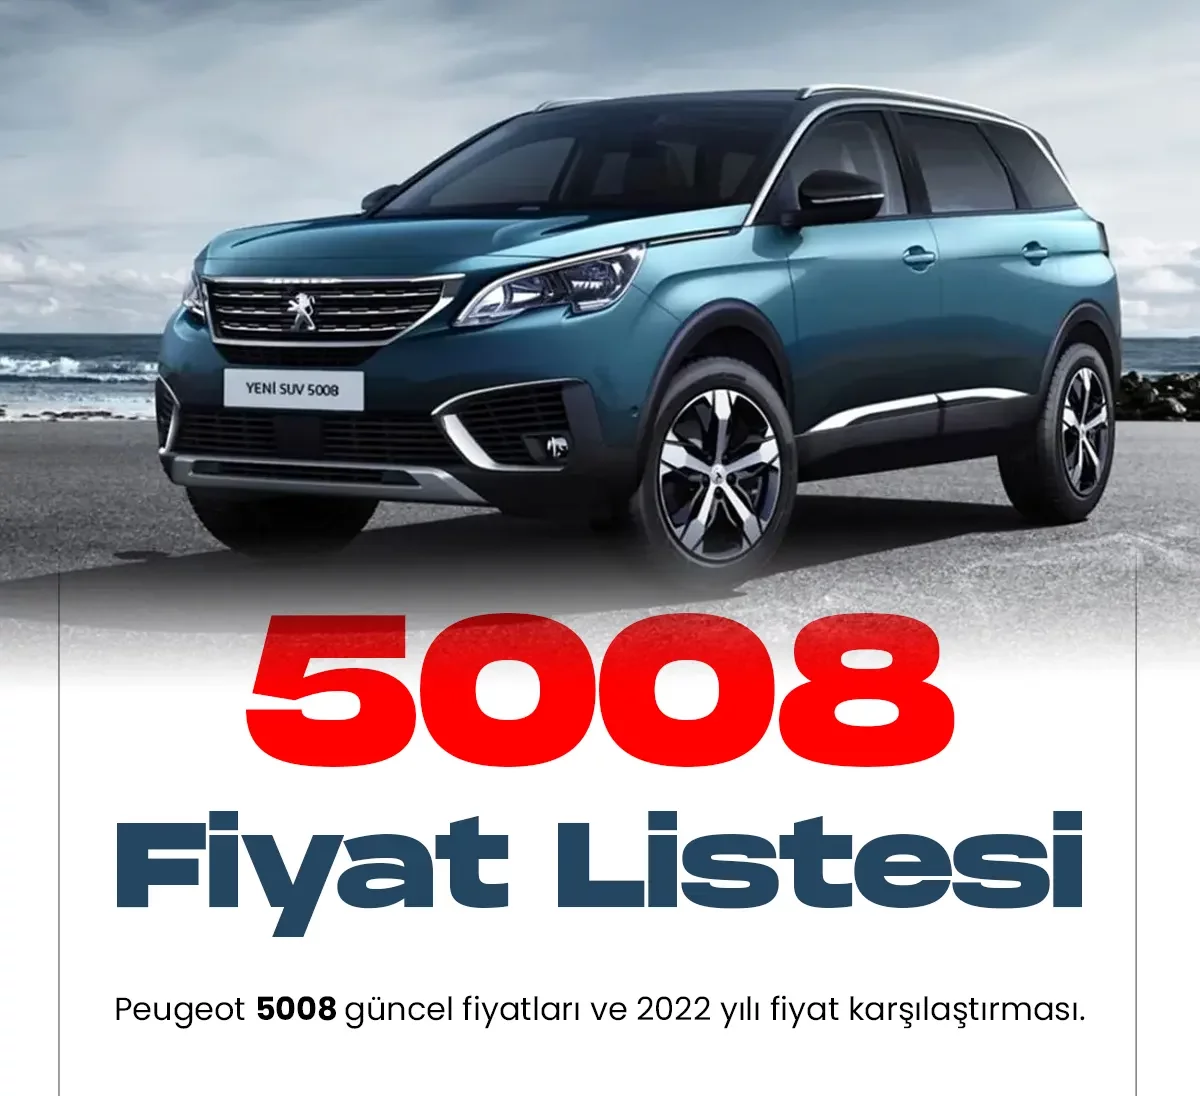 Peugeot 5008 Ocak fiyat listesi yayımlandı.